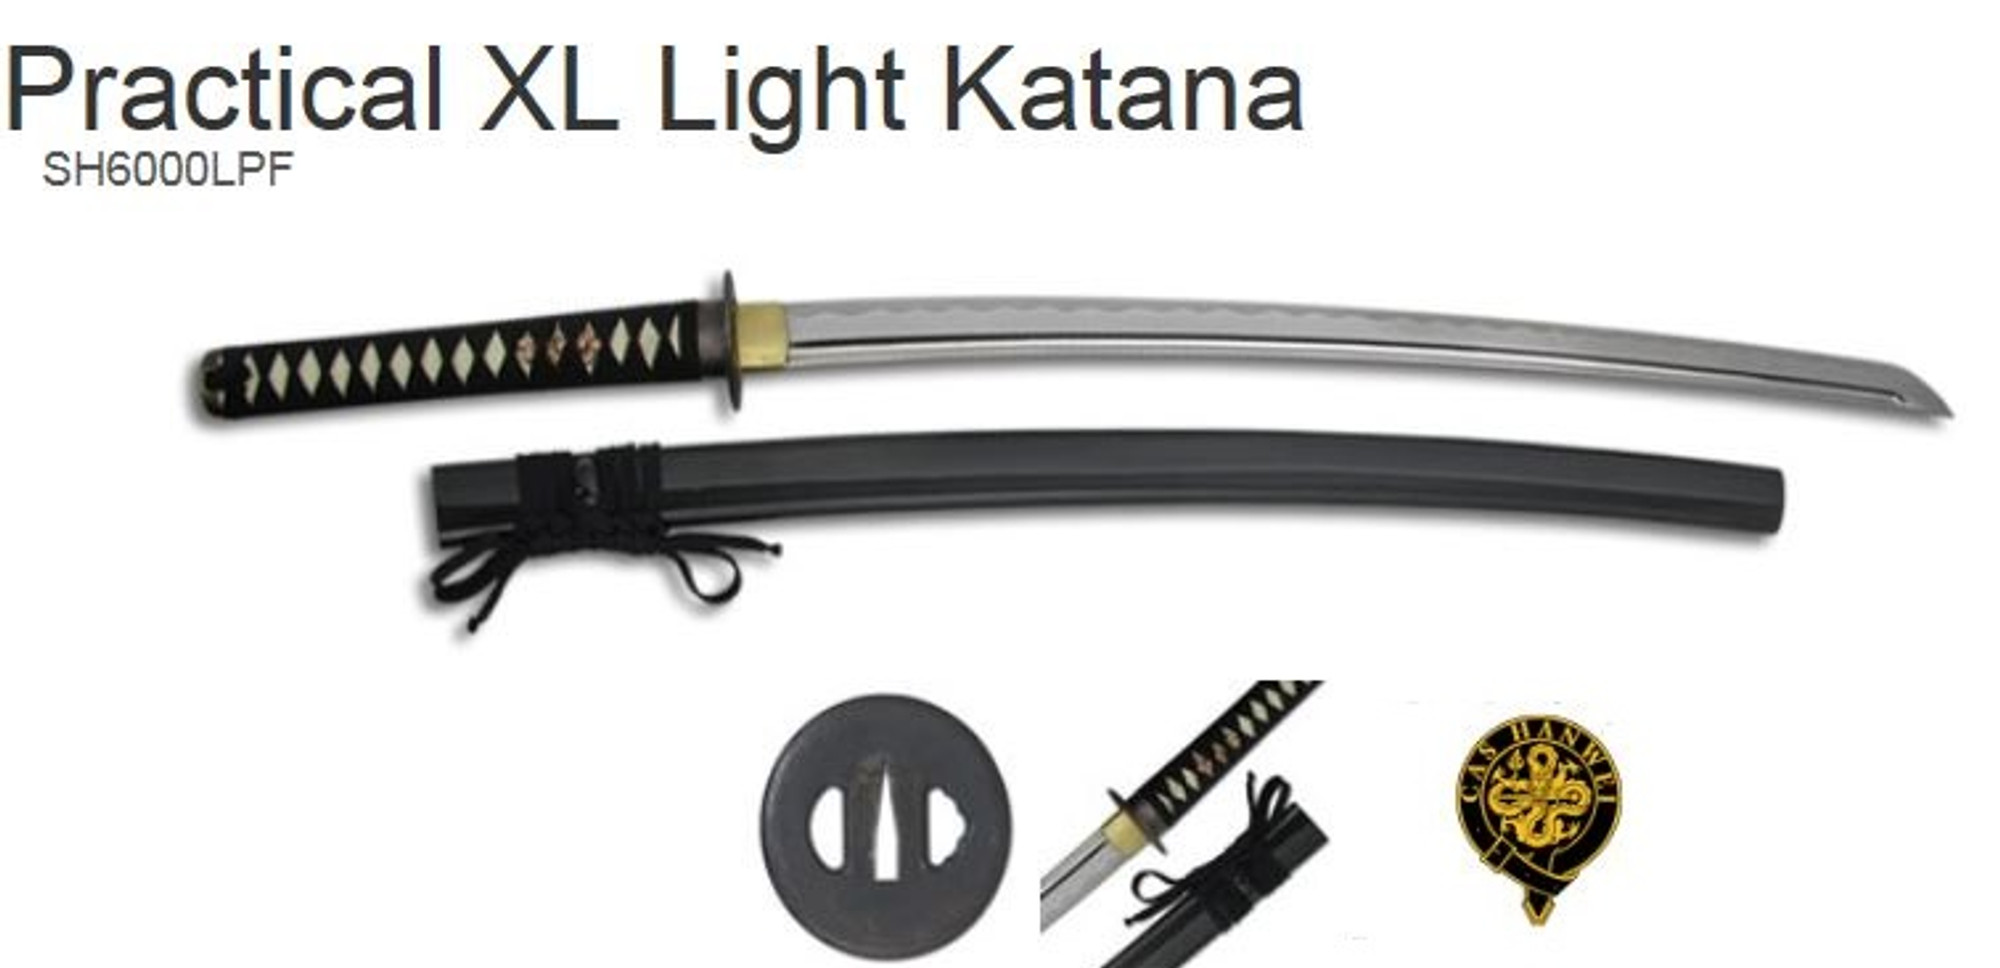 Hanwei 6000LPF Practical XL Light Katana